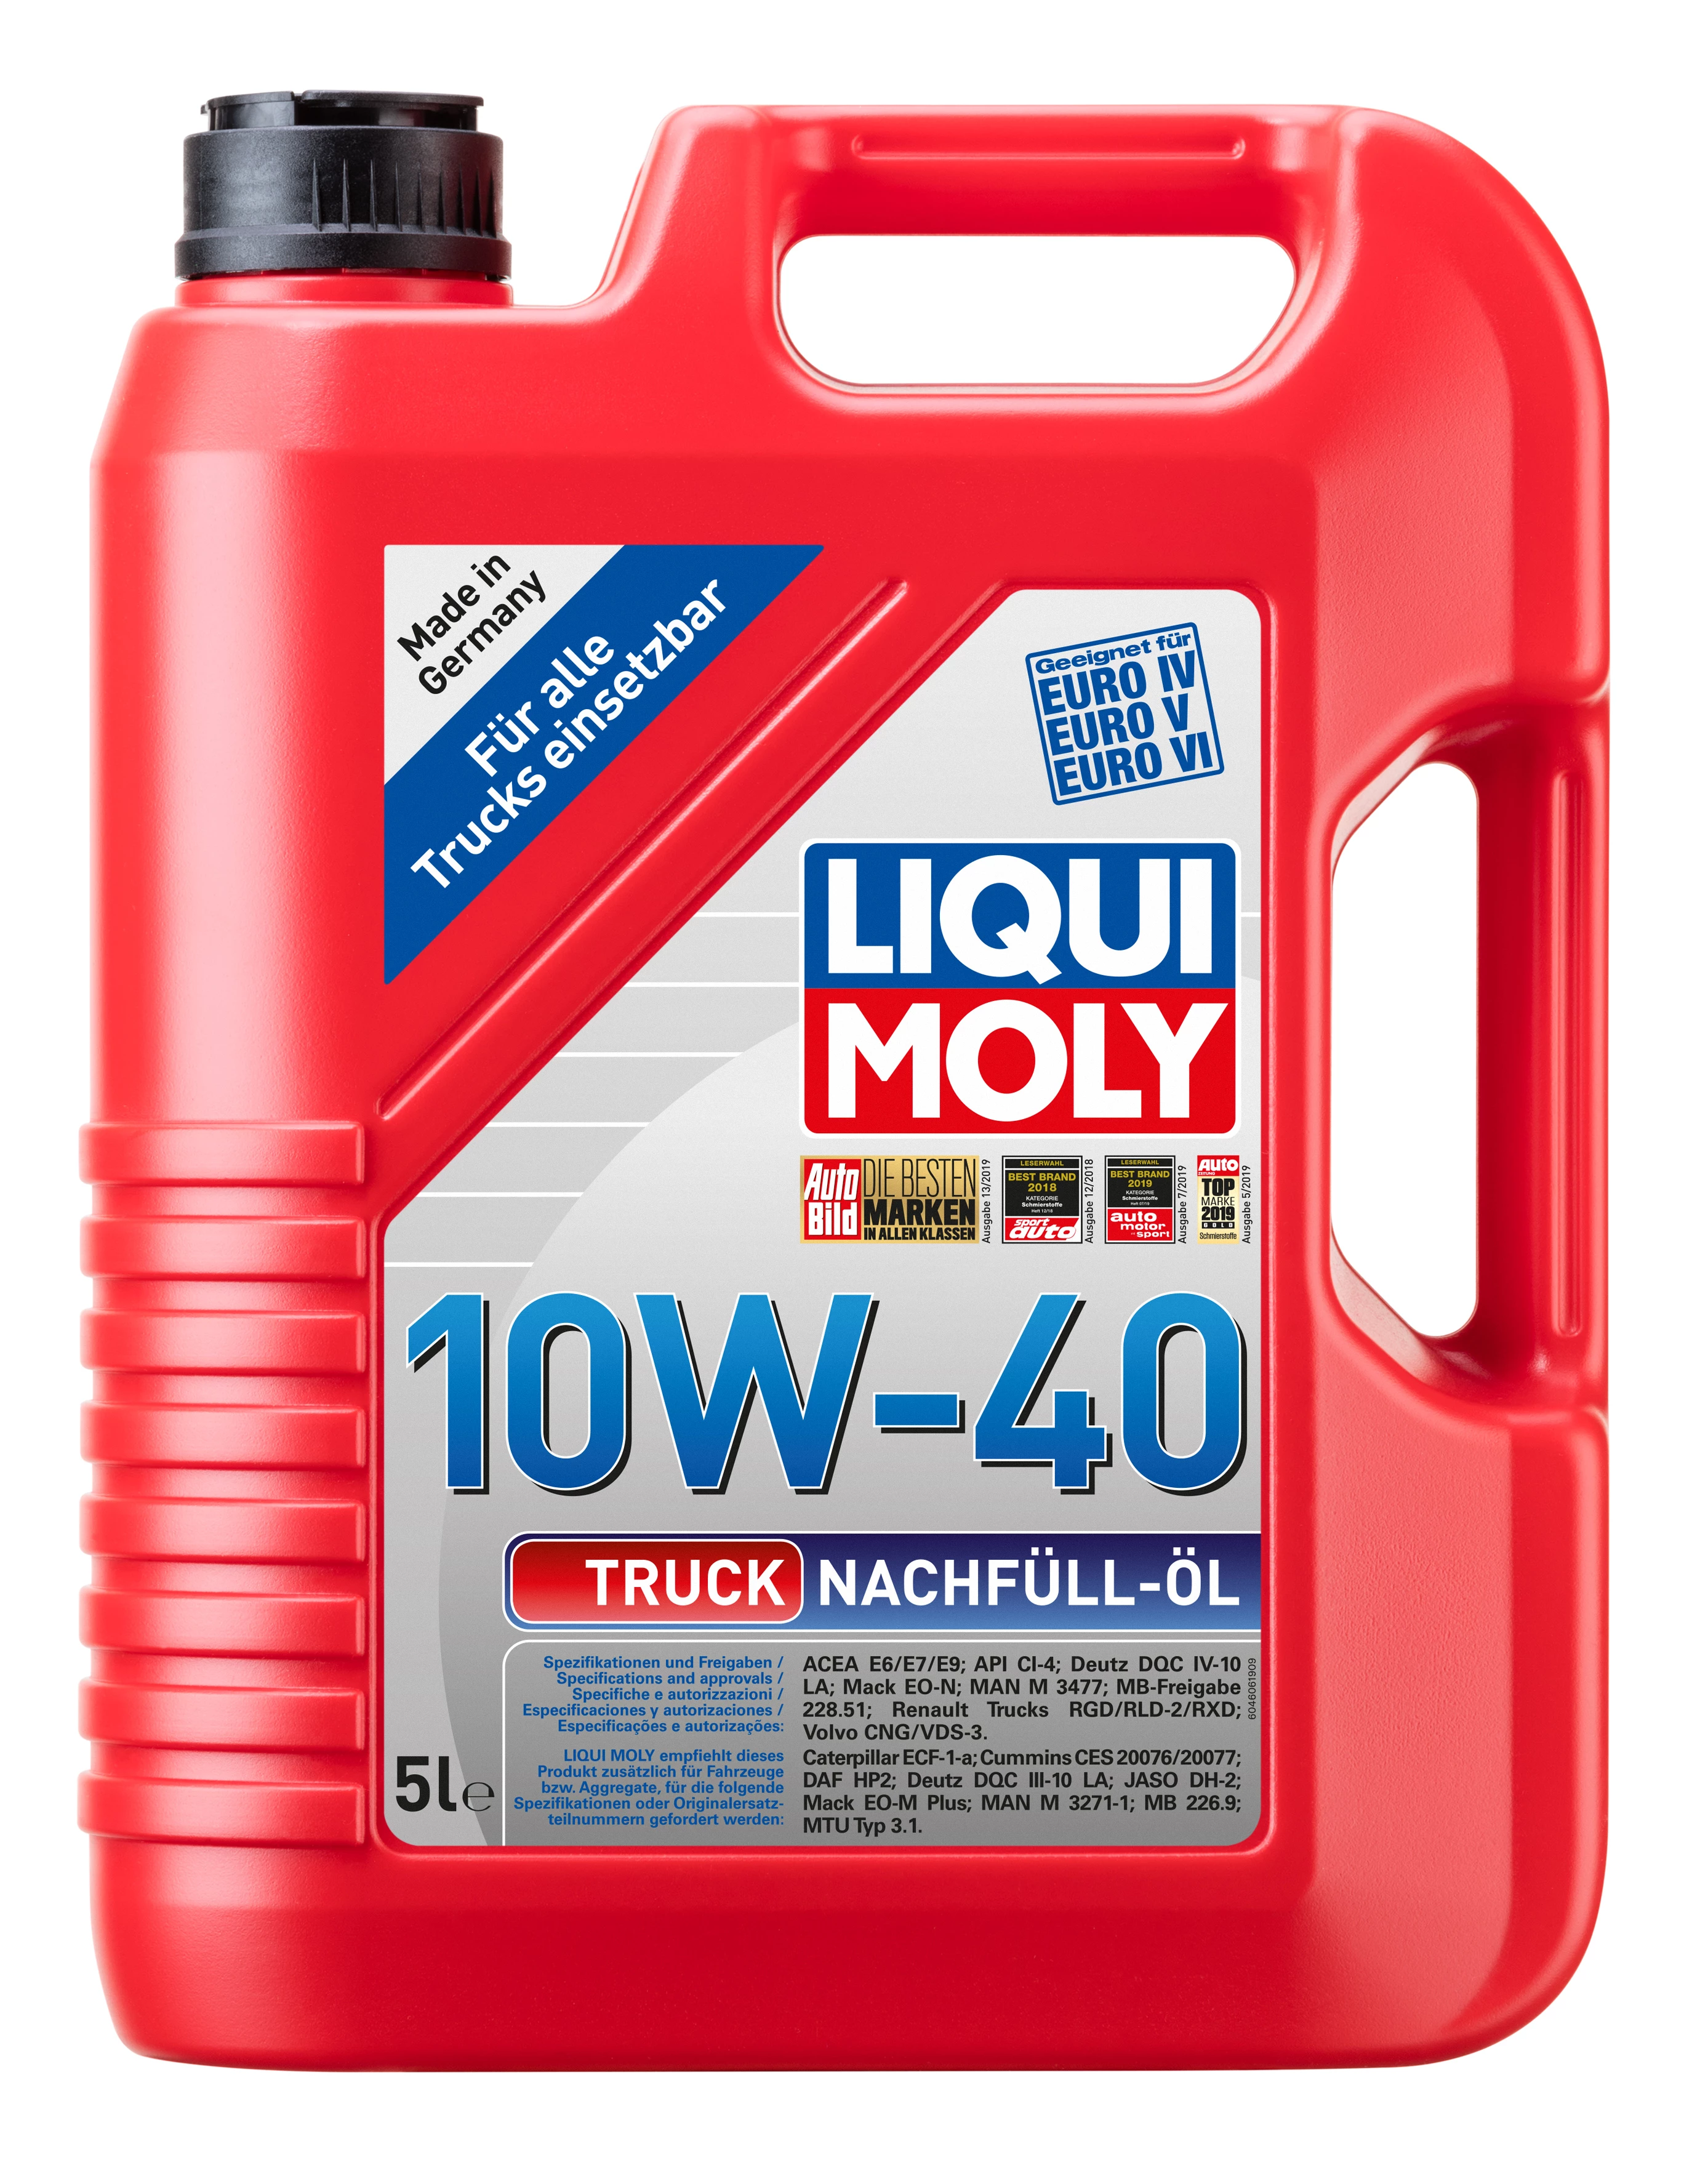  4606 LiquiMoly НС-синтетическое моторное масло Truck Nachfull-Oil 10W-40 5л 